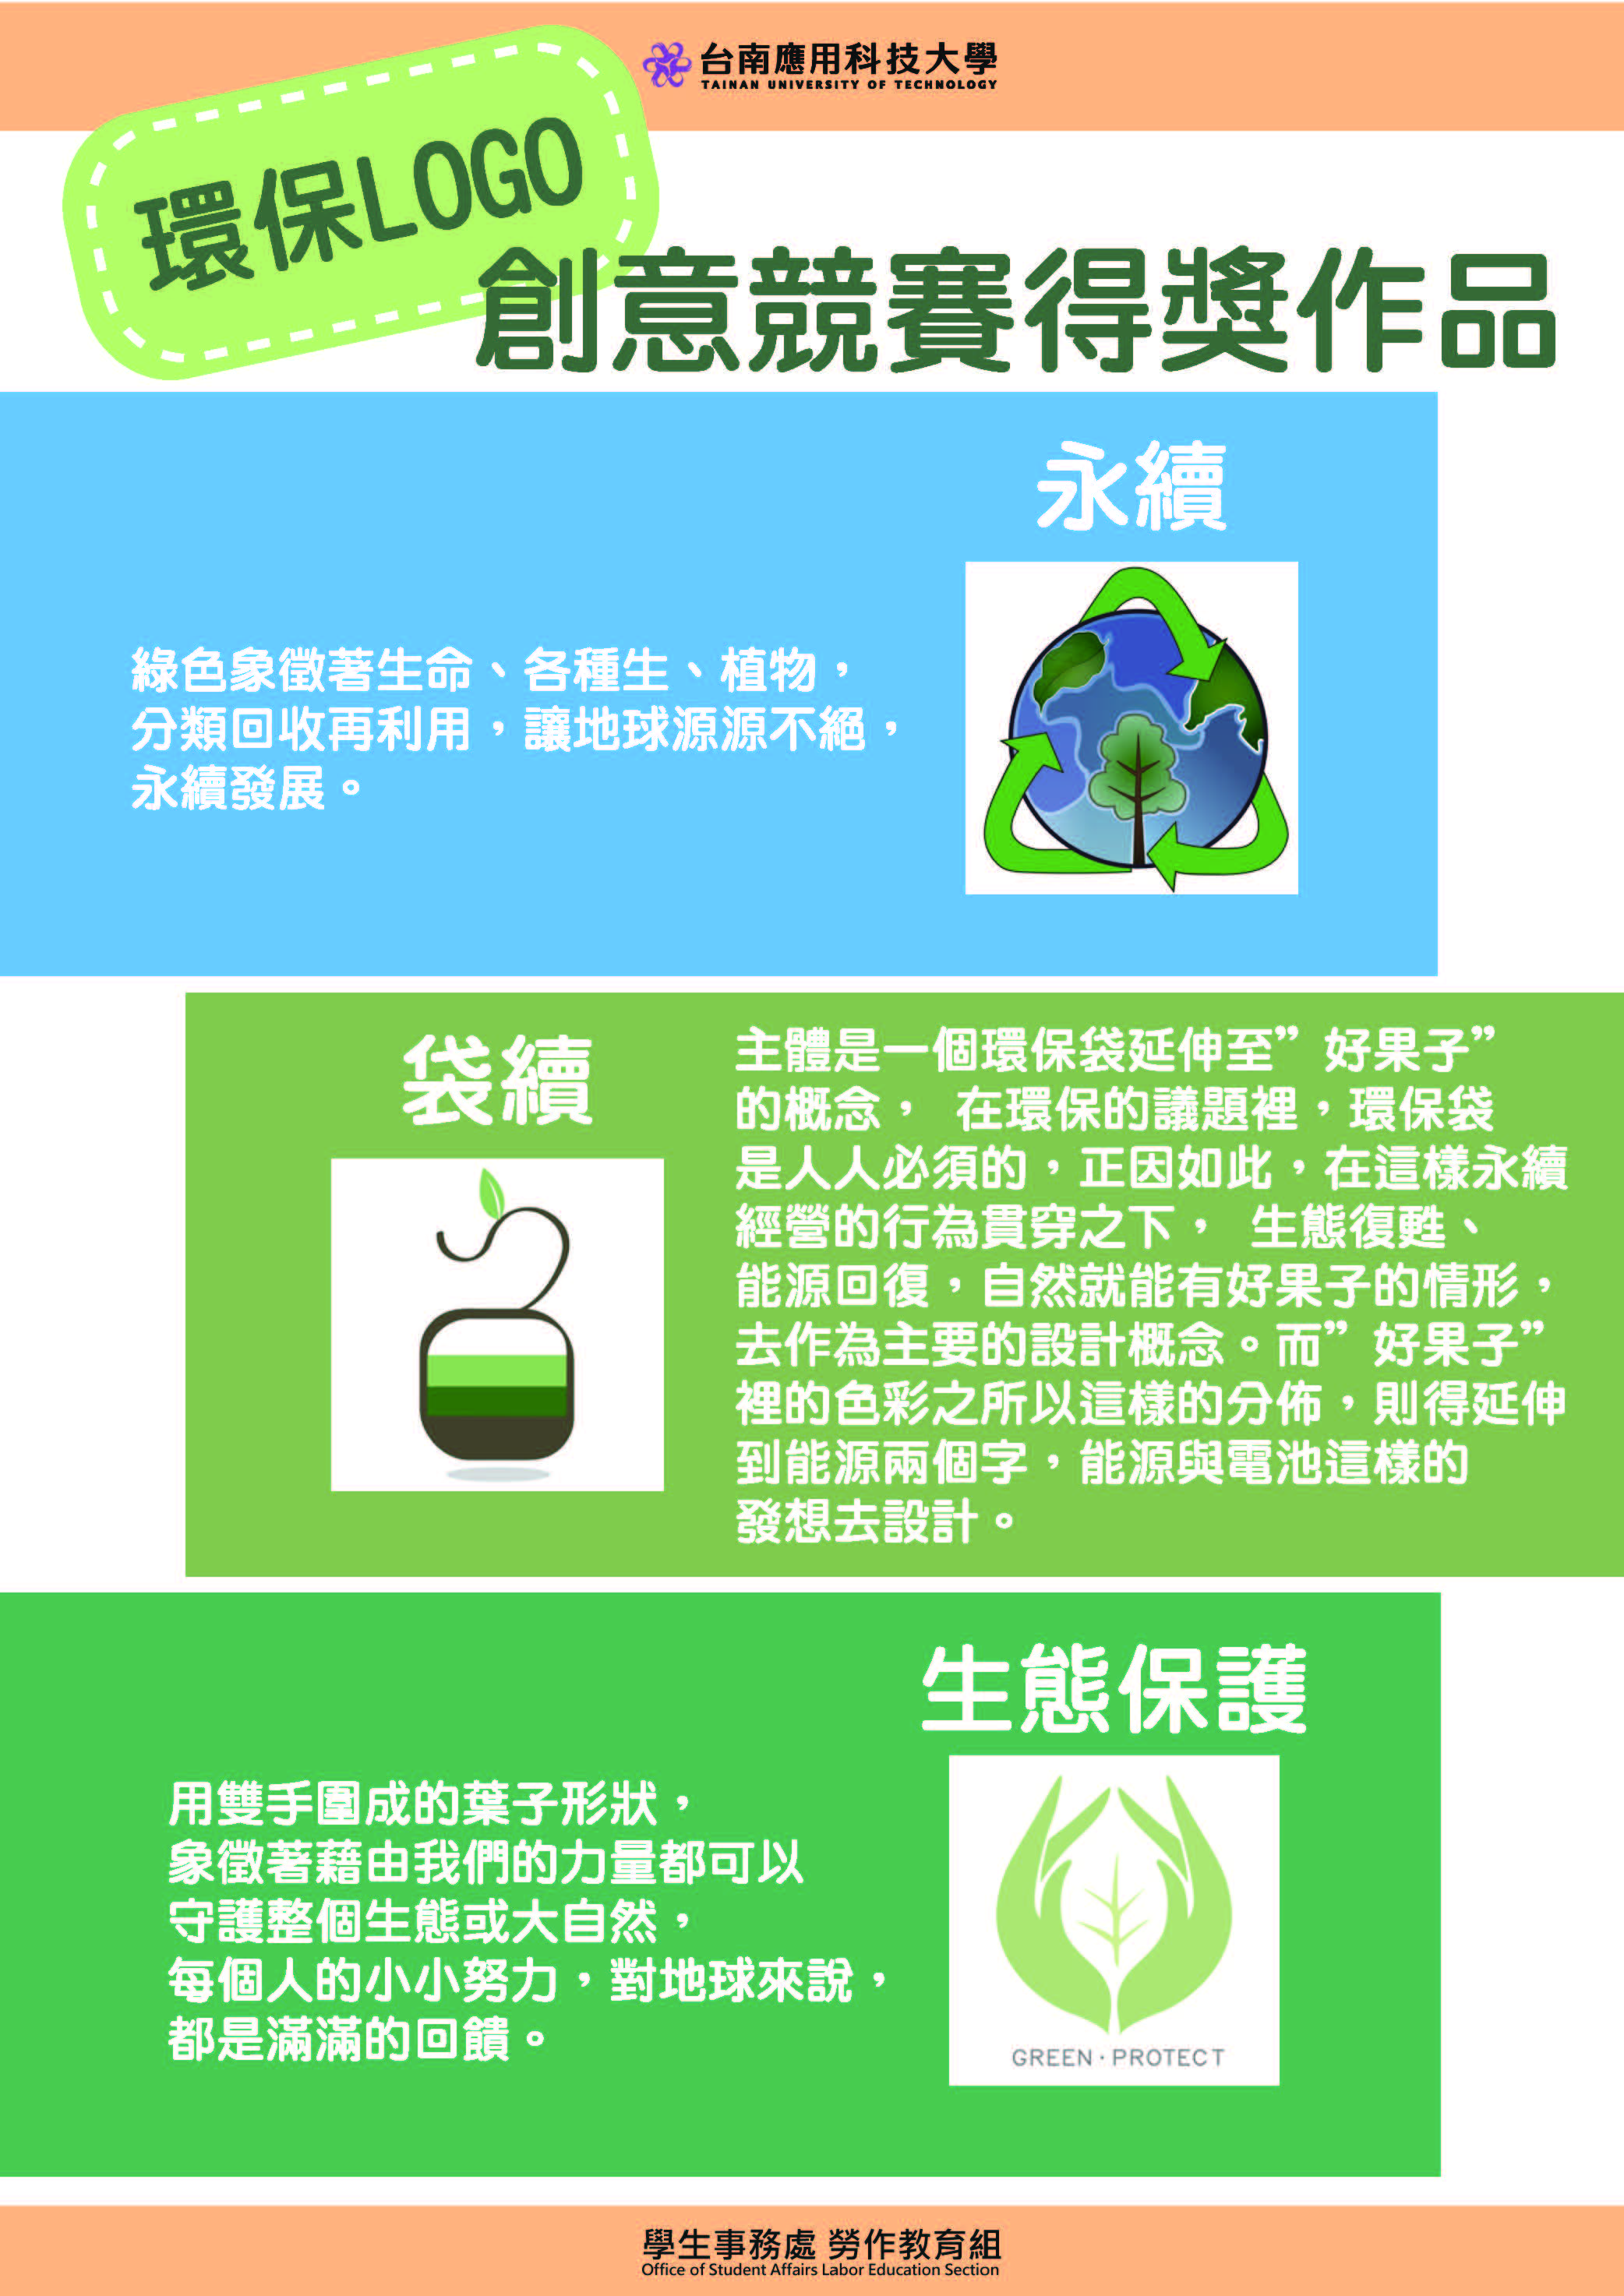 環保logo競賽-佳作(另開新視窗)